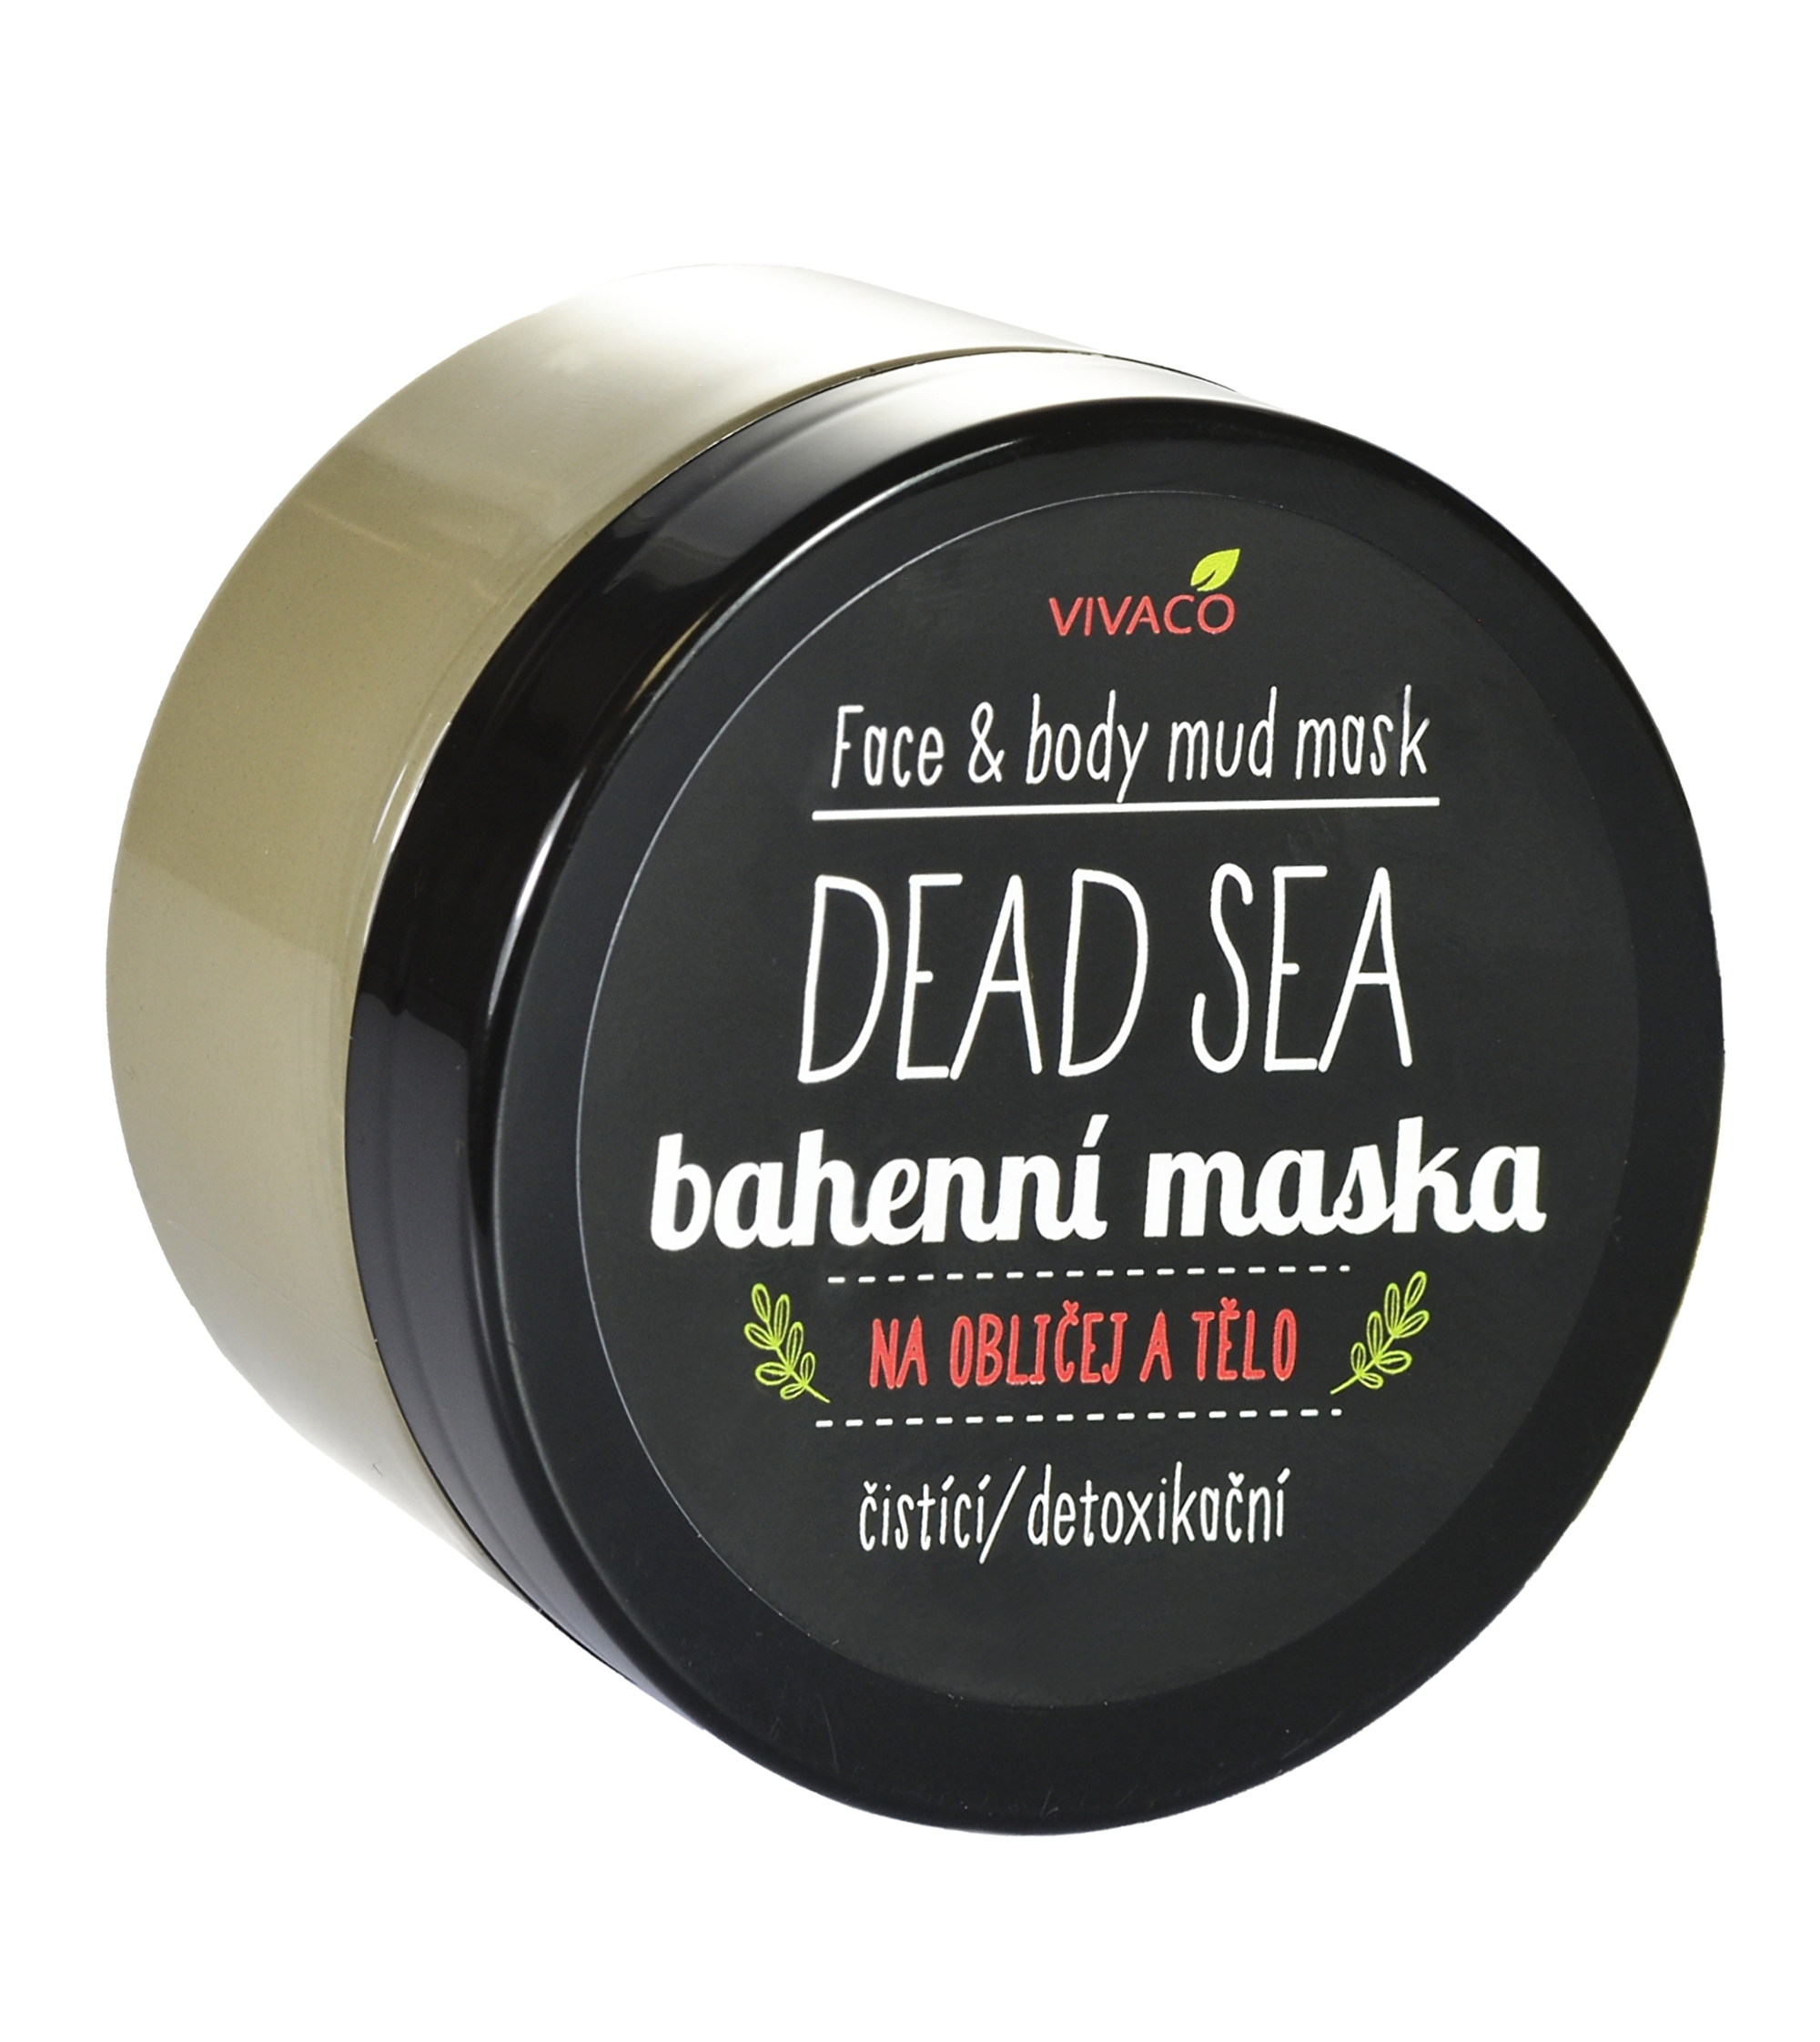 Vivaco Dead sea - pleťová bahenní maska 100 ml